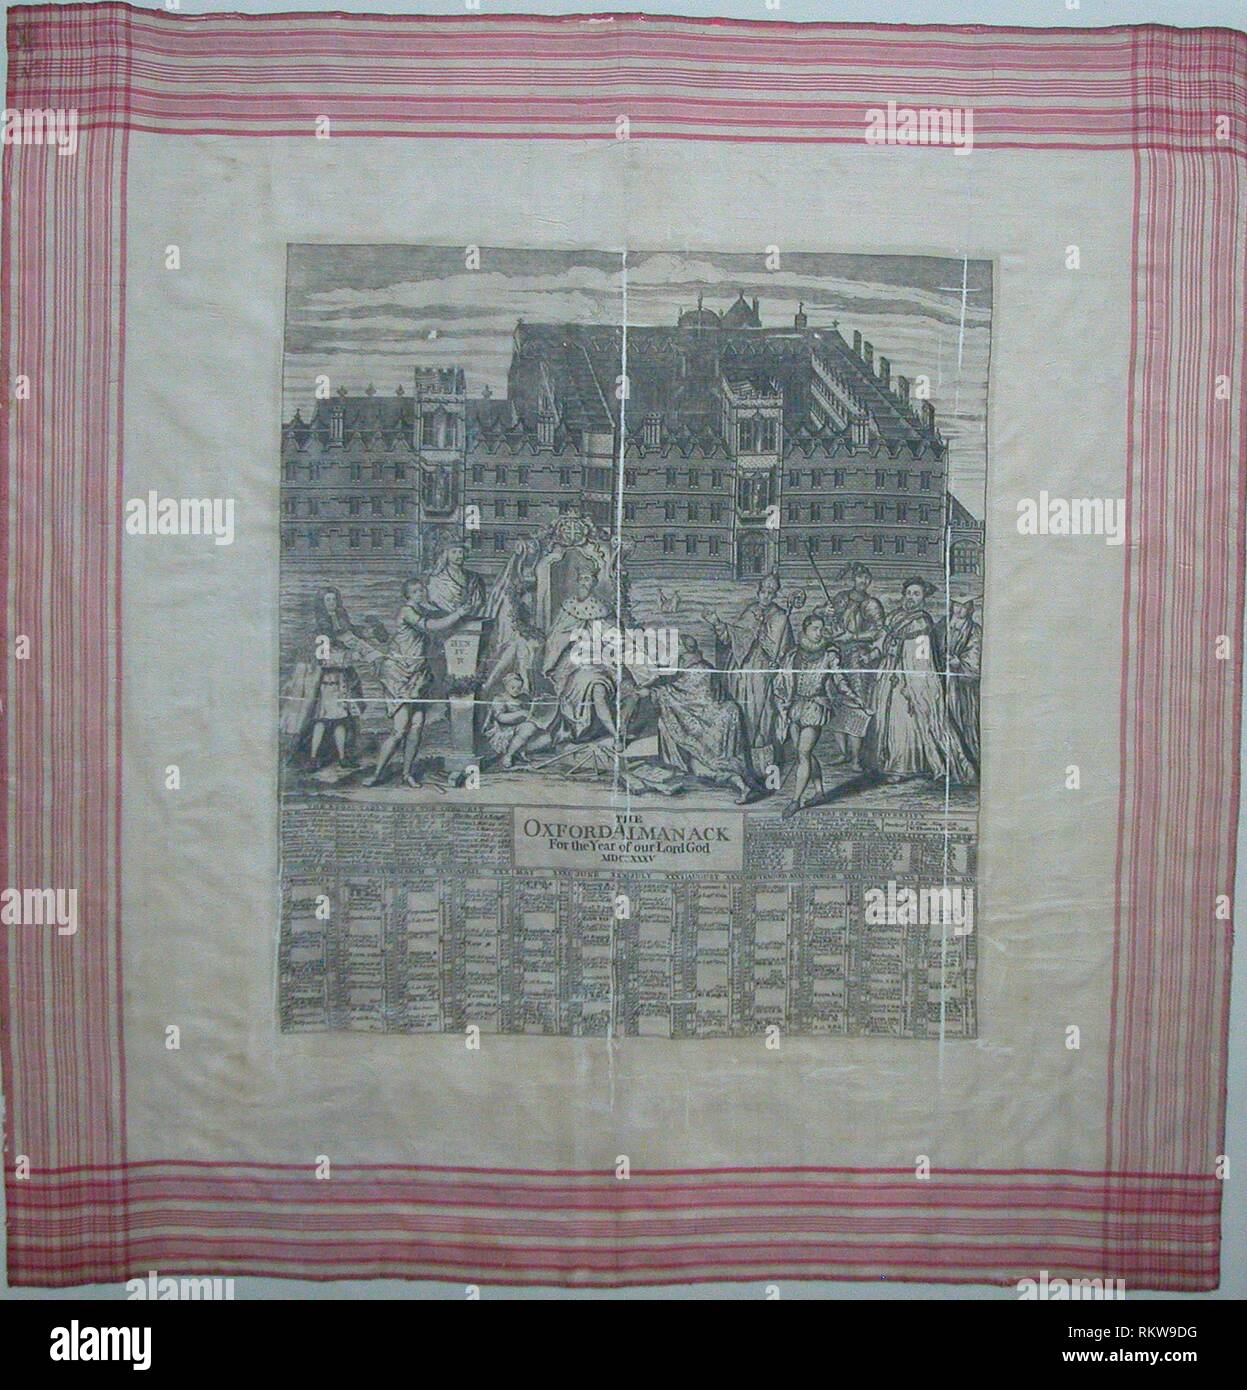 Le mouchoir (Oxford Almanack pour l'année de Notre Seigneur MDCCXXXV) - ch.  1735 - gravée par George Vertue (anglais, 1684-1756) Angleterre - Artiste  Photo Stock - Alamy